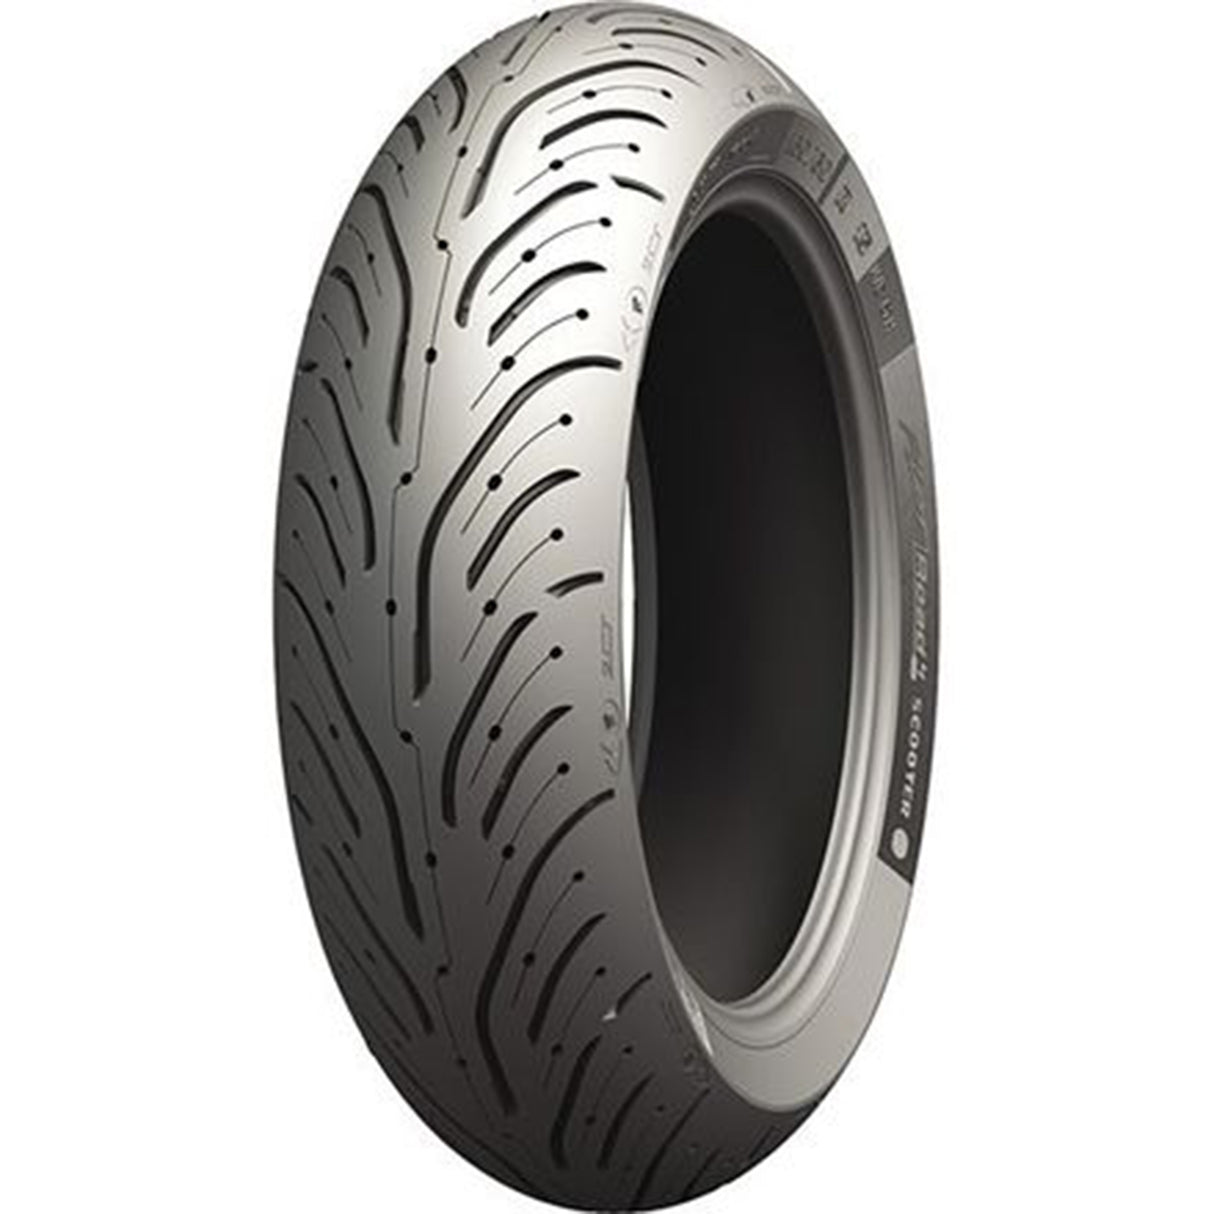 Michelin Pilot Road 4 190/55 ZR 17 73W TL Rear Tyre